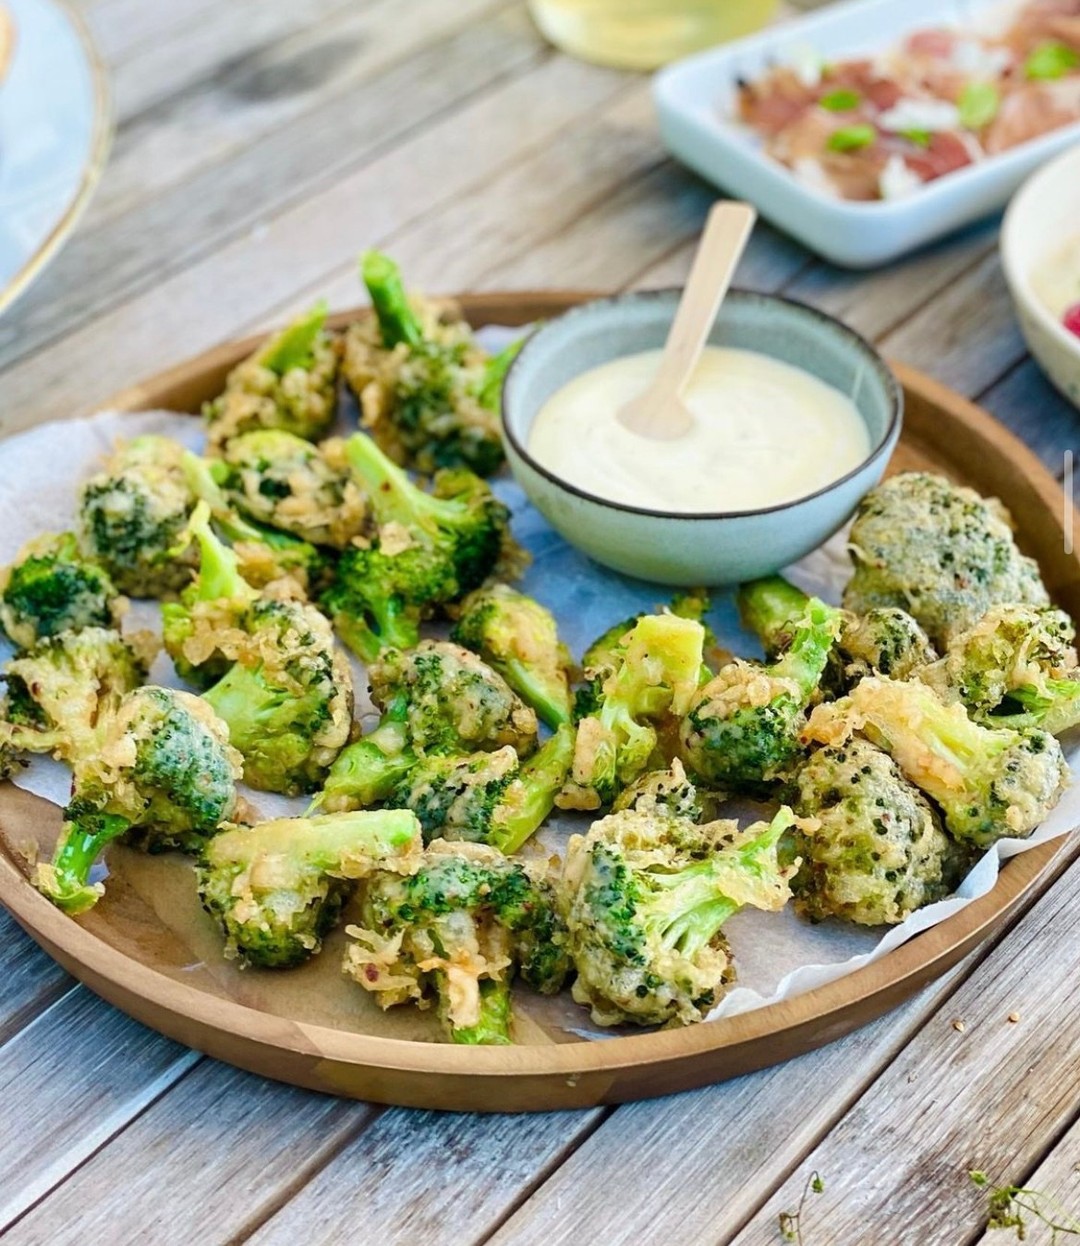 😍Dybstegt broccoli - smager virkelig godt 😍
Okay venner, I har sikkert fået dybstegte rejer, forårsruller osv. 

Men hvis ikke I har smagt dybstegt broccoli, så kan det altså virkelig anbefales.

En virkelig lækker tilføjelse til tapas eller som snack🥦

#godtno #instafood #deldinmad #svenskmat #børnevenligmad #dinner #abendessen #tapas #middag #snack #sundmad #nrkmat #aftensmad #appetizer #nemmad #broccoli